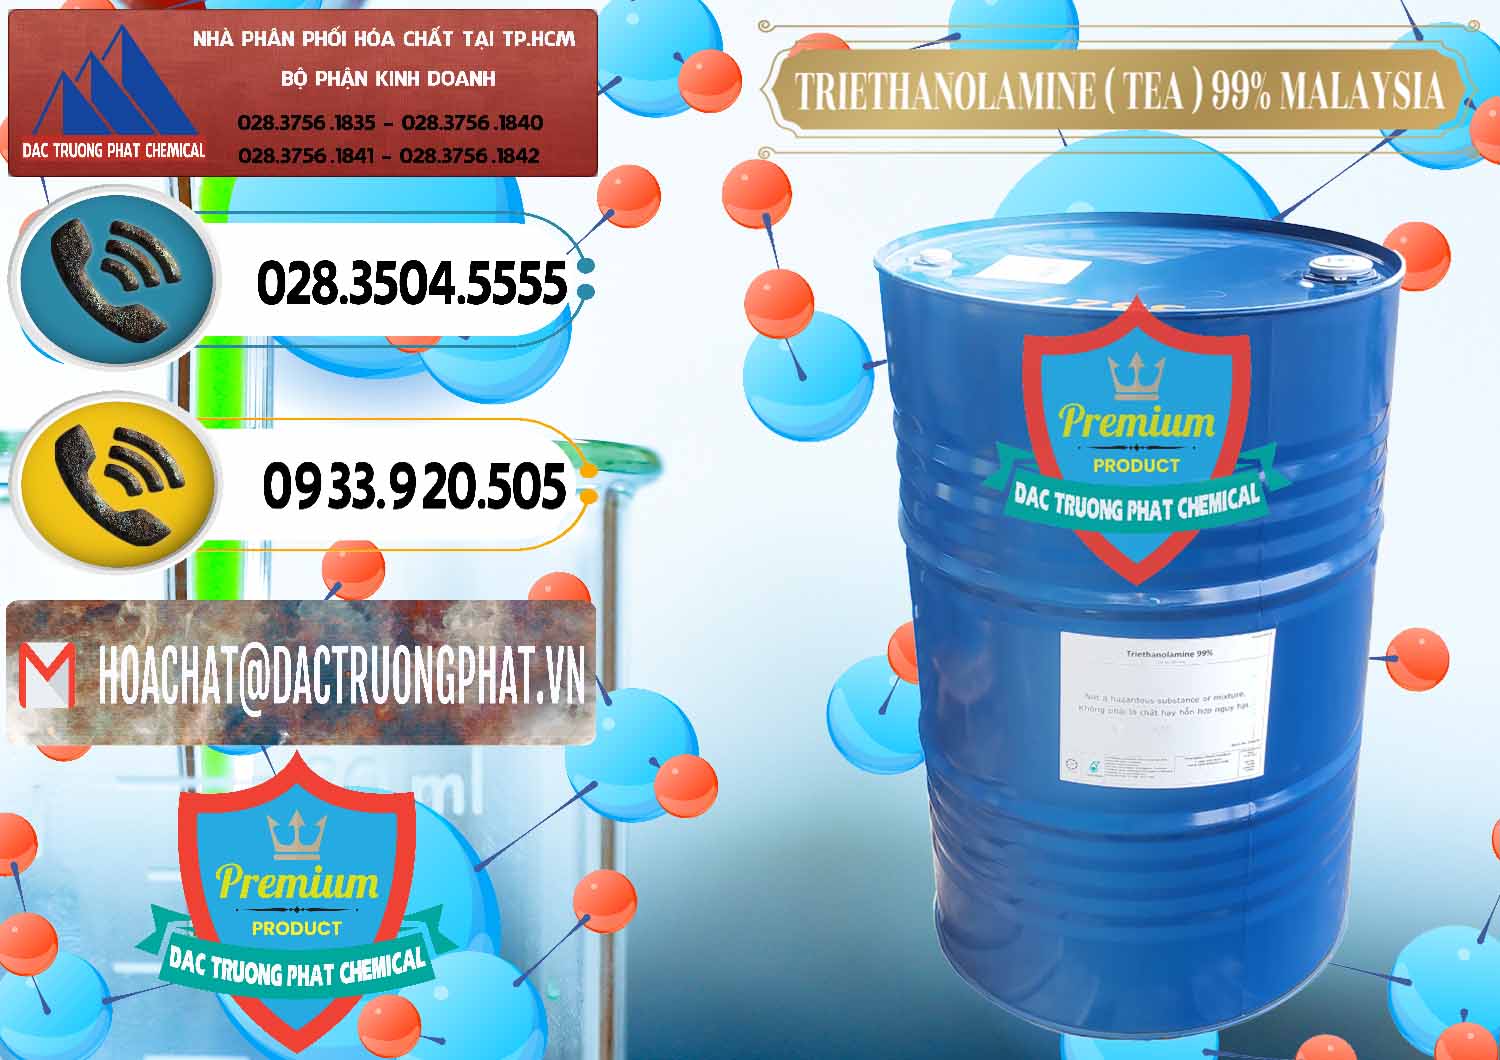 Cty kinh doanh ( bán ) TEA - Triethanolamine 99% Mã Lai Malaysia - 0323 - Công ty nhập khẩu - cung cấp hóa chất tại TP.HCM - hoachatdetnhuom.vn